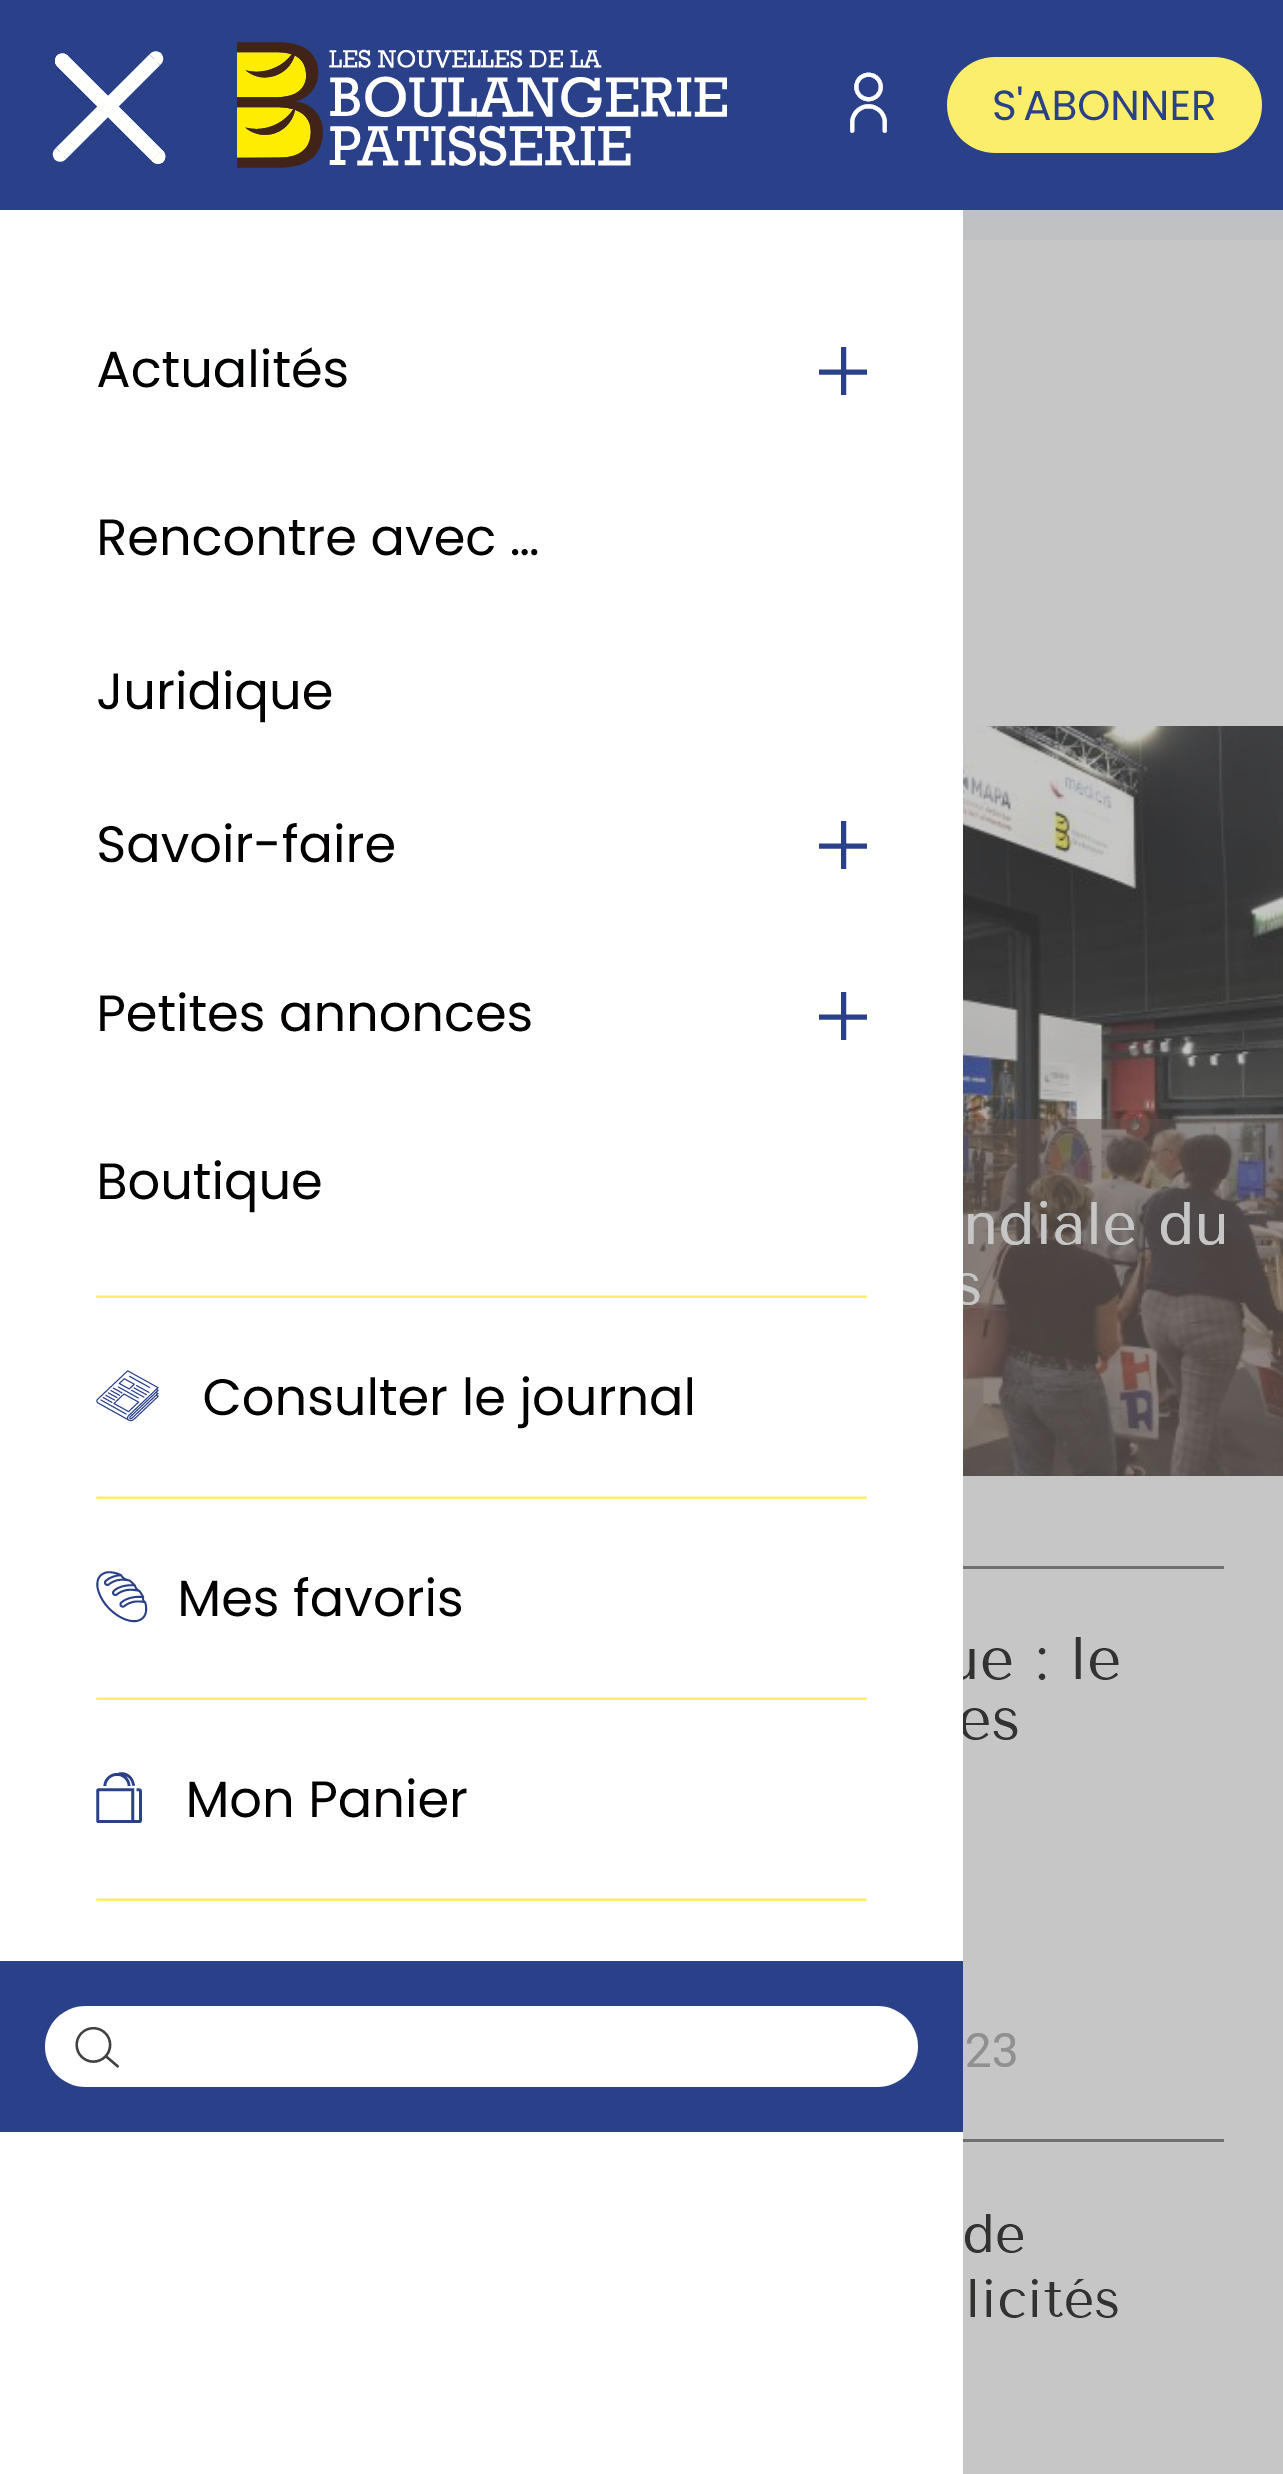 Menu mobile reponsive site ecommerce wordpress Les Nouvelles de la Boulangerie Pâtisserie